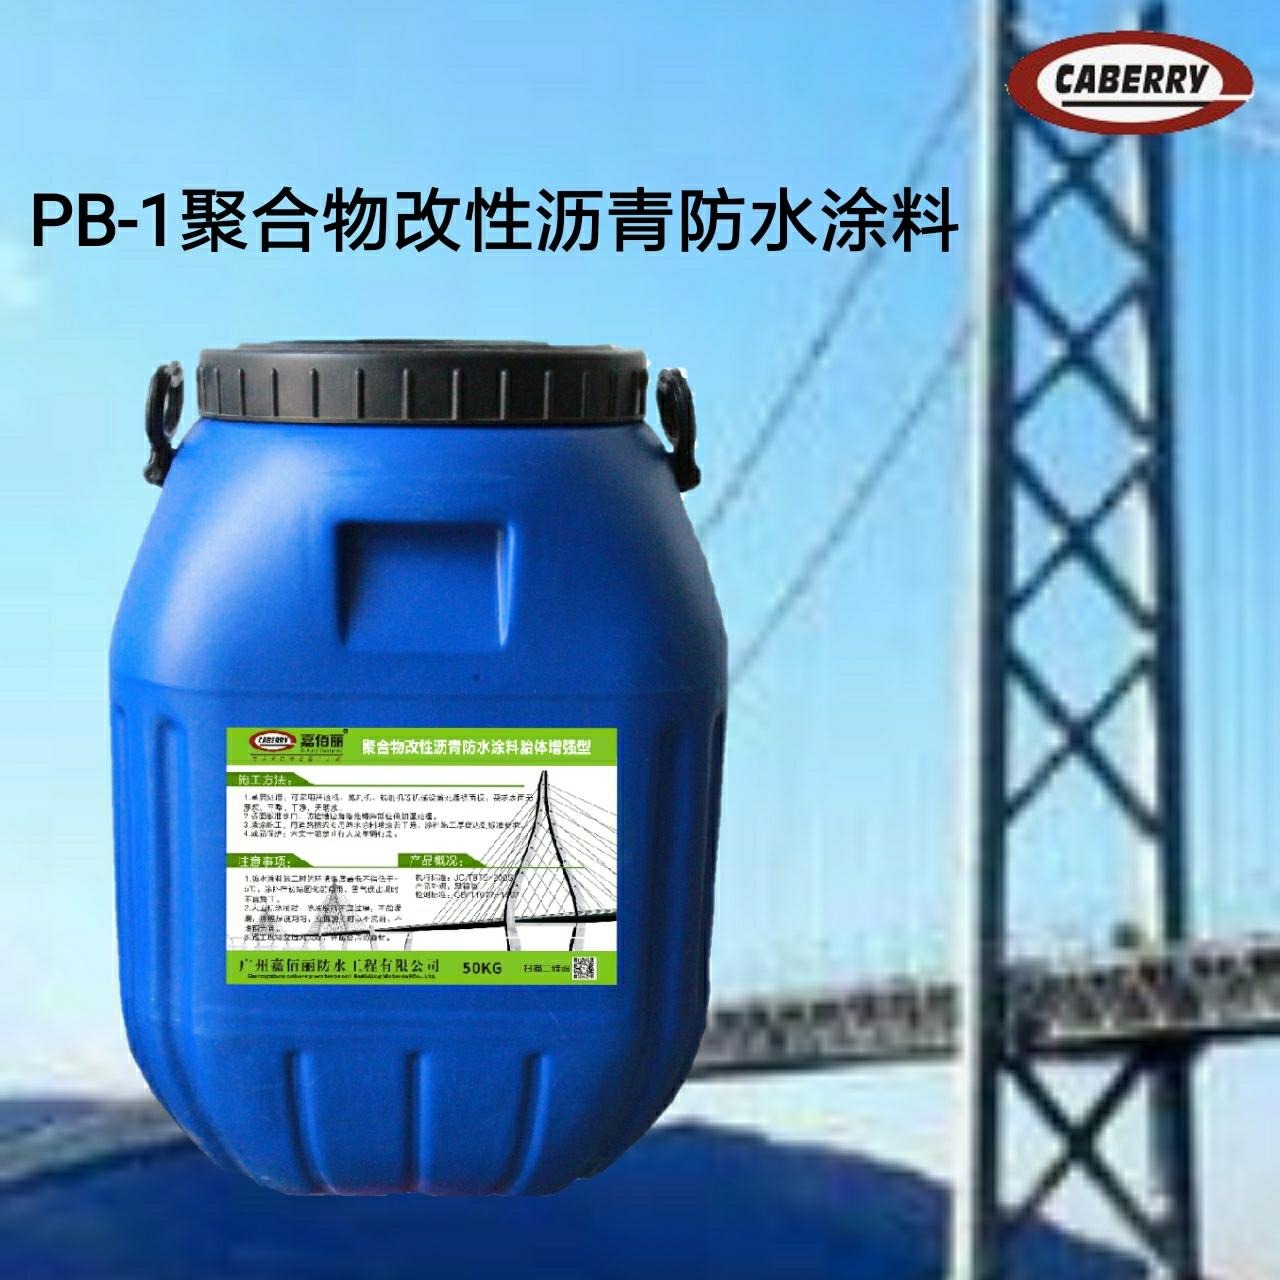 PB-1聚合物改性沥青防水涂料 道桥用全面防水层施工报价